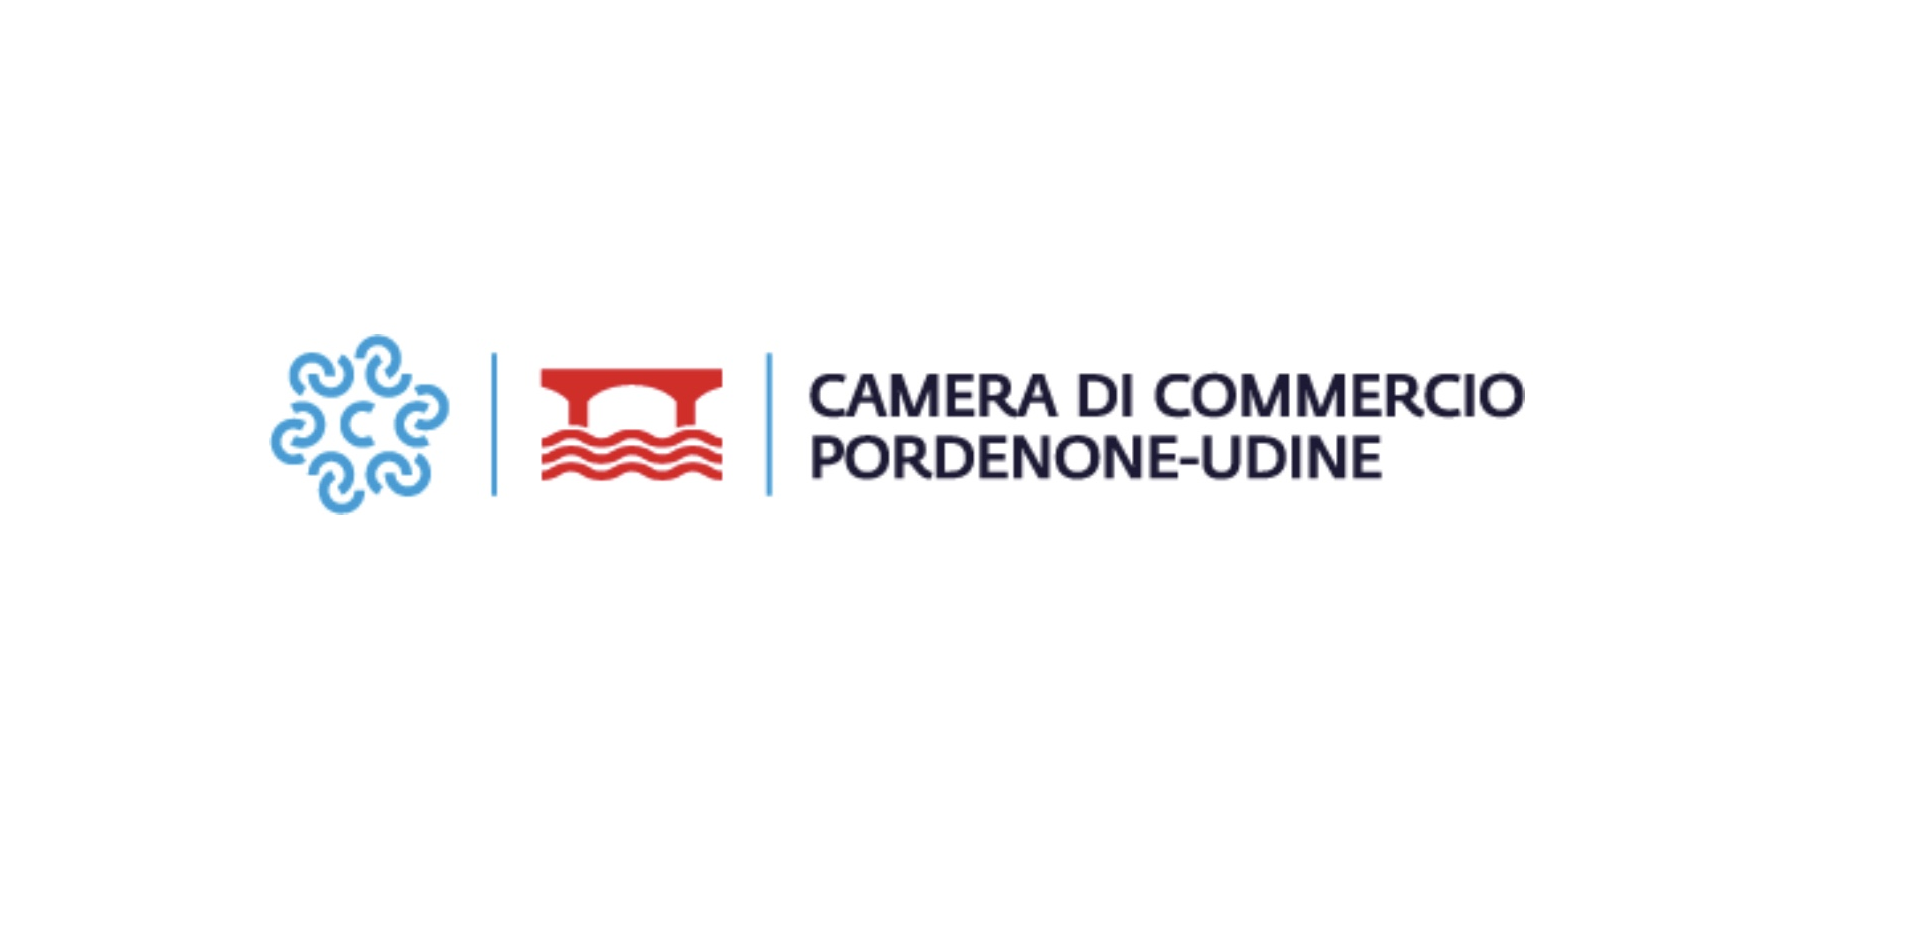 Udine e Pordenone